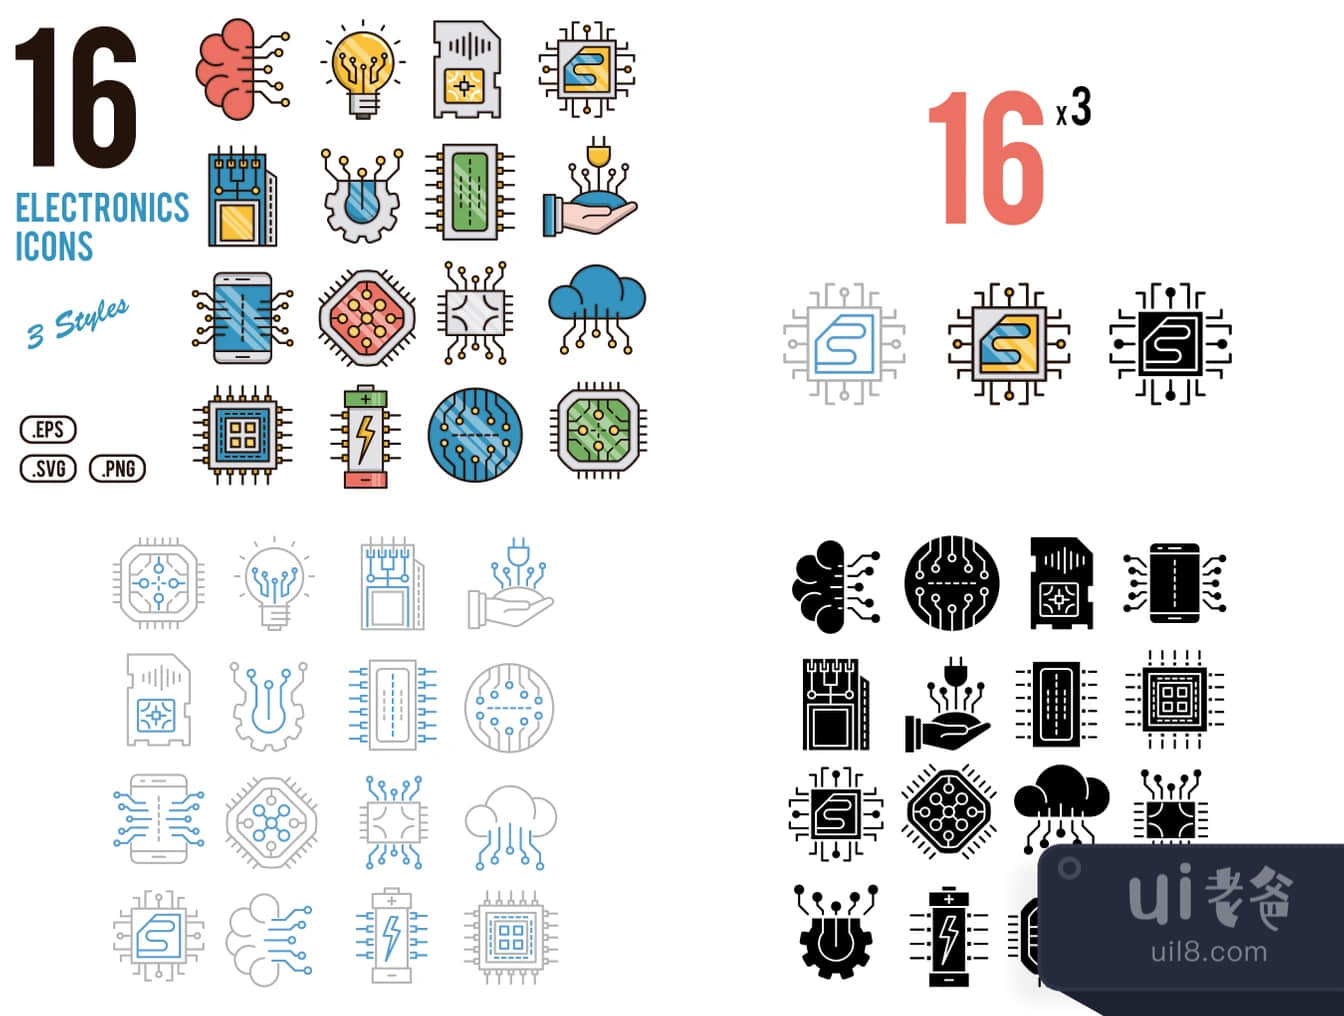 16个电子图标 (16 Electronics Icons)插图1